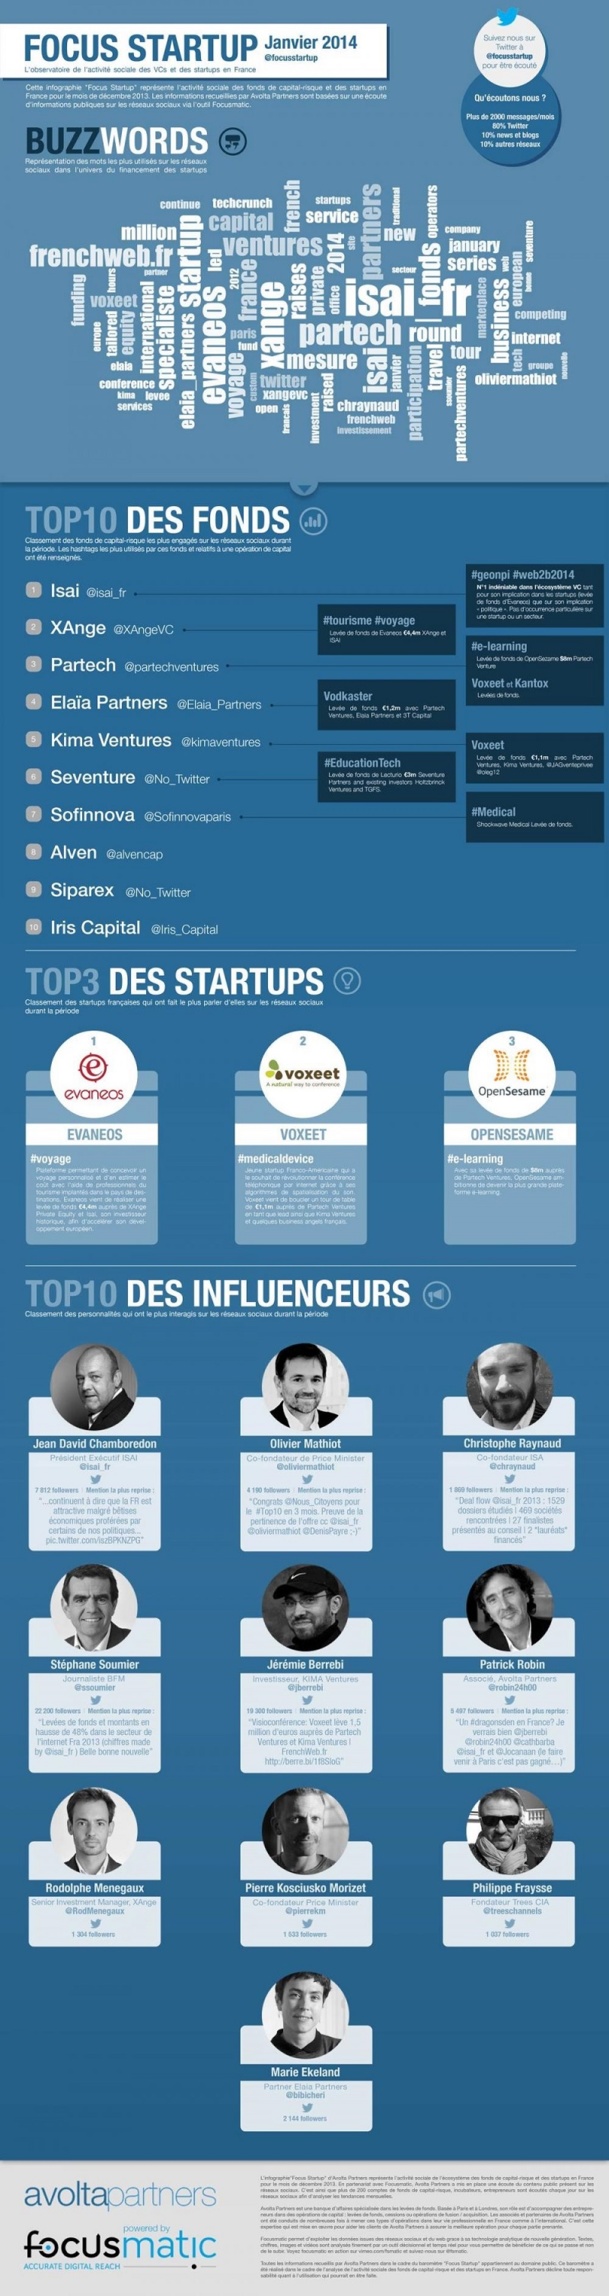 Cette infographie “Focus Startup” représente l’activité sociale des fonds de capital-risque et startups en France pour le mois de janvier 2014.